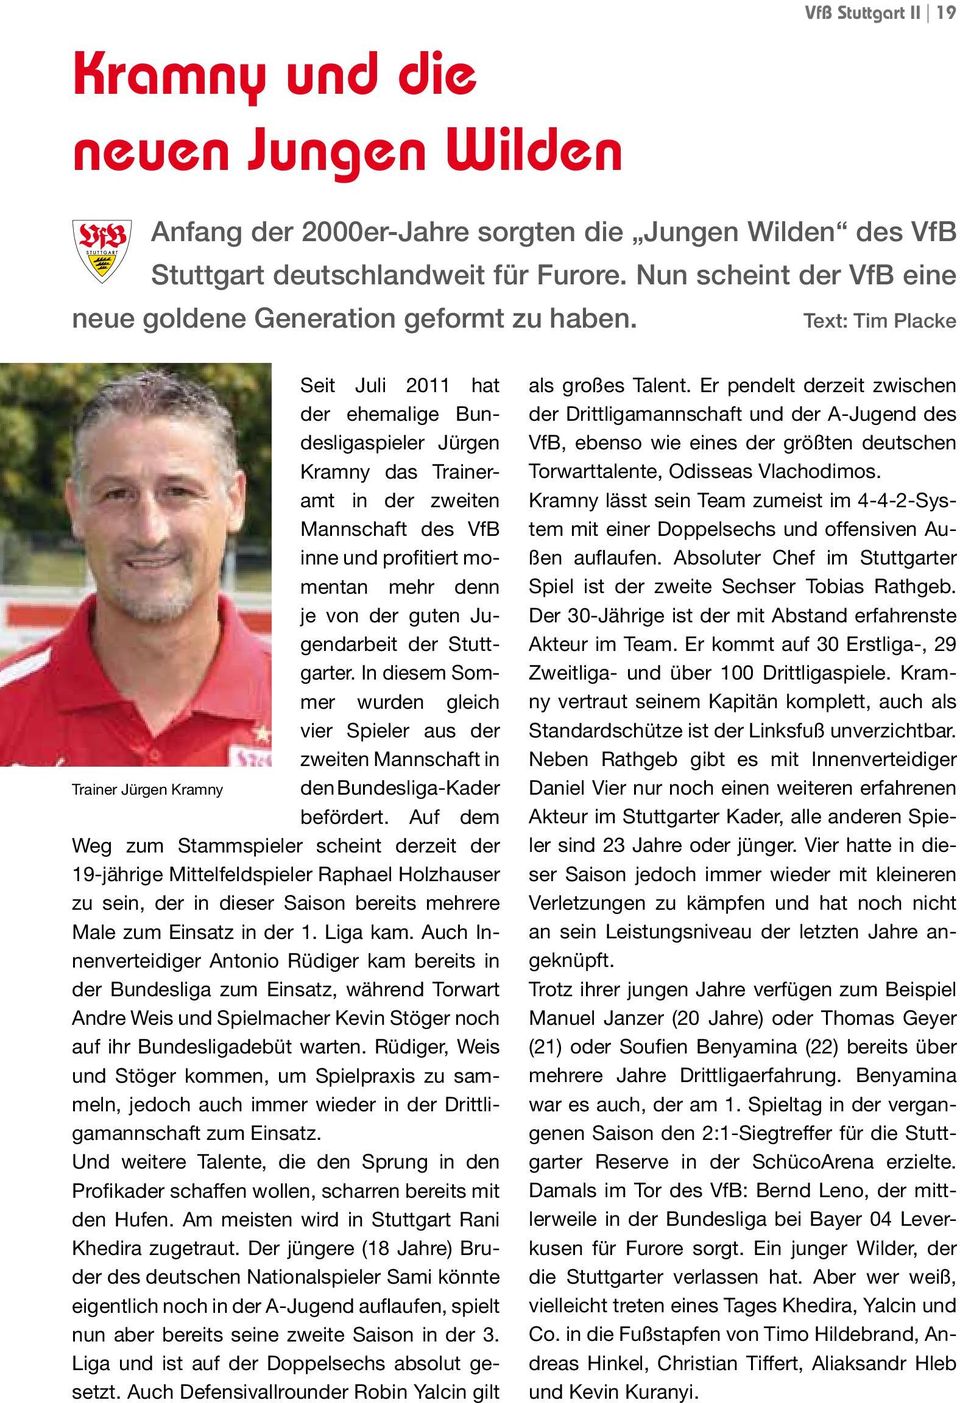 Text: Tim Placke Seit Juli 2011 hat der ehemalige Bundesligaspieler Jürgen Kramny das Traineramt in der zweiten Mannschaft des VfB inne und profitiert momentan mehr denn je von der guten Jugendarbeit